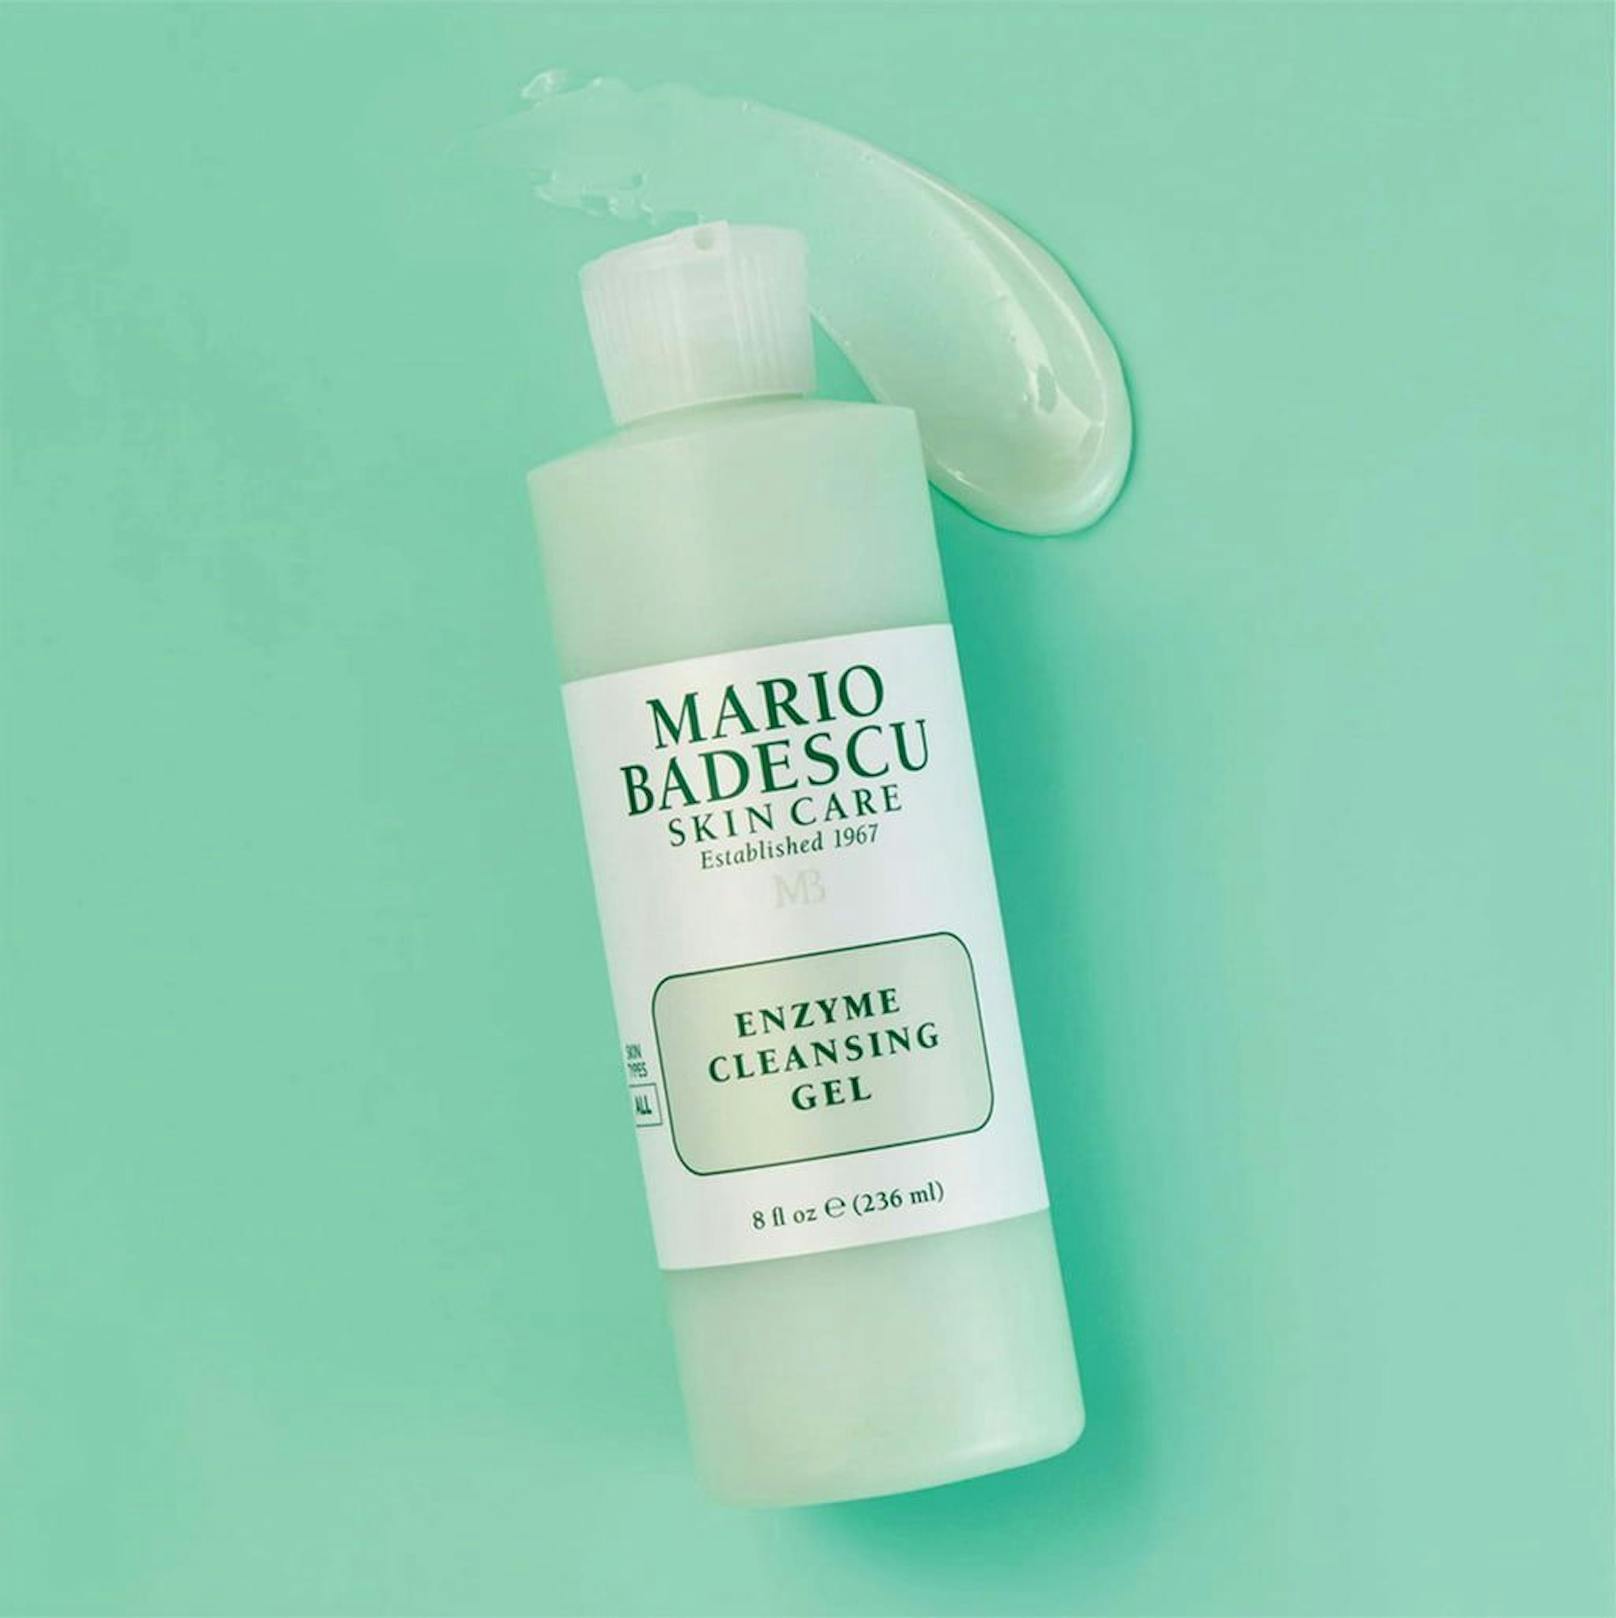 Mario Badescu hat ein frisches Reinigungsgel für den Sommer, das mit Enzymen das Gesicht nachhaltig reinigt und ein Frischegefühl hinterlässt. Das Enzyme Cleansing Gel kostet für 59 ml 9,90 Euro.